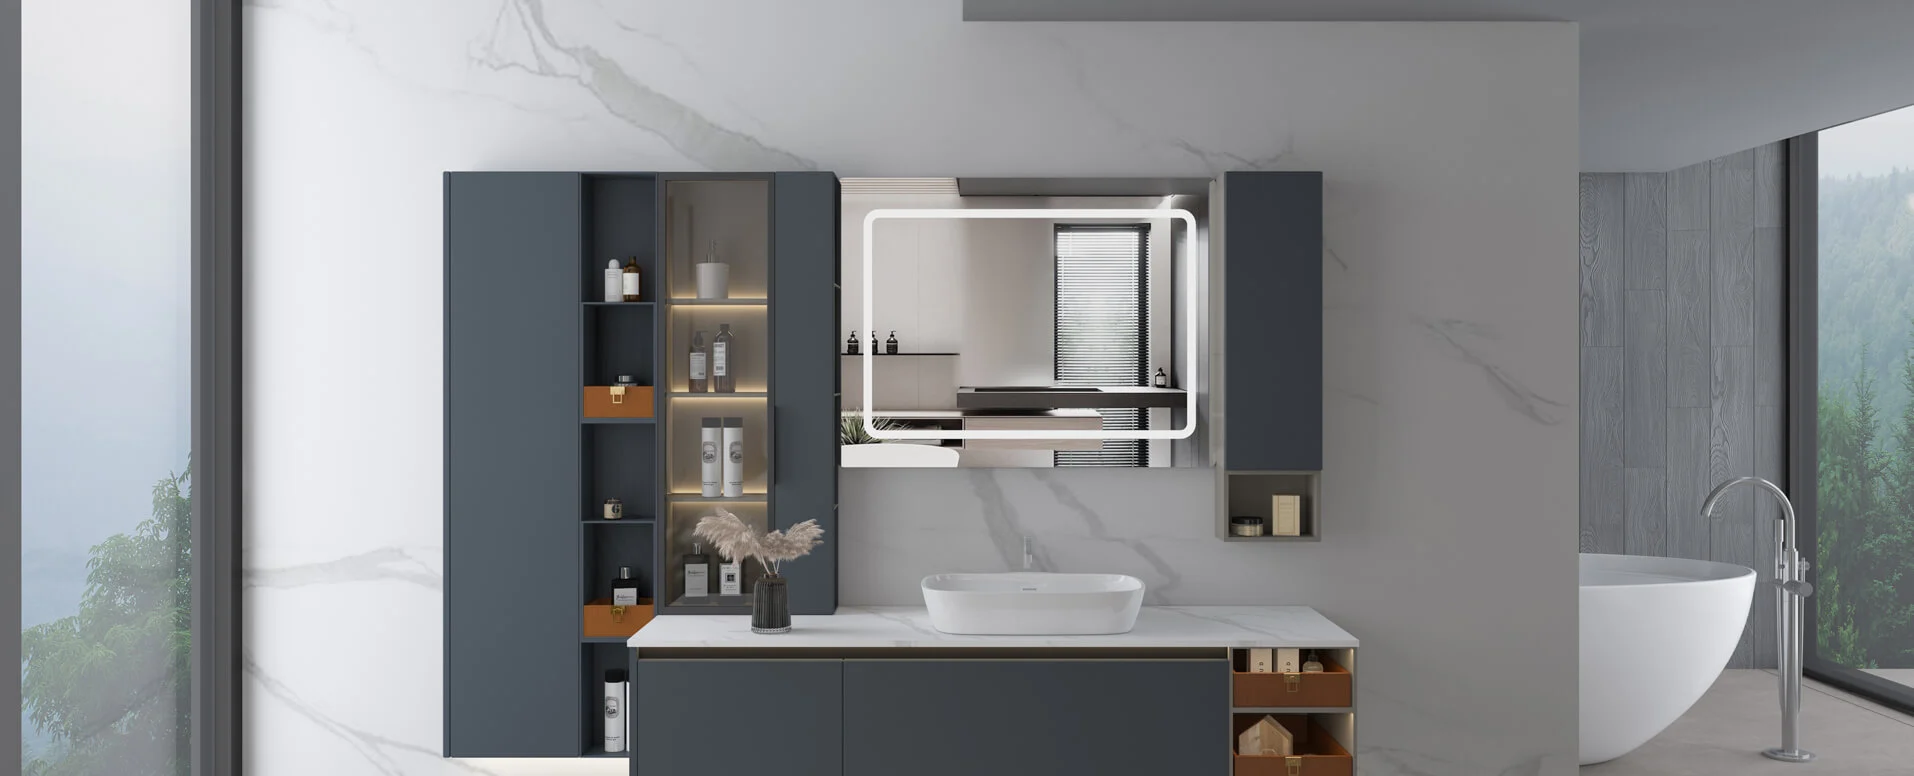 Quel matériau est le meilleur pour les armoires de salle de bains modernes?